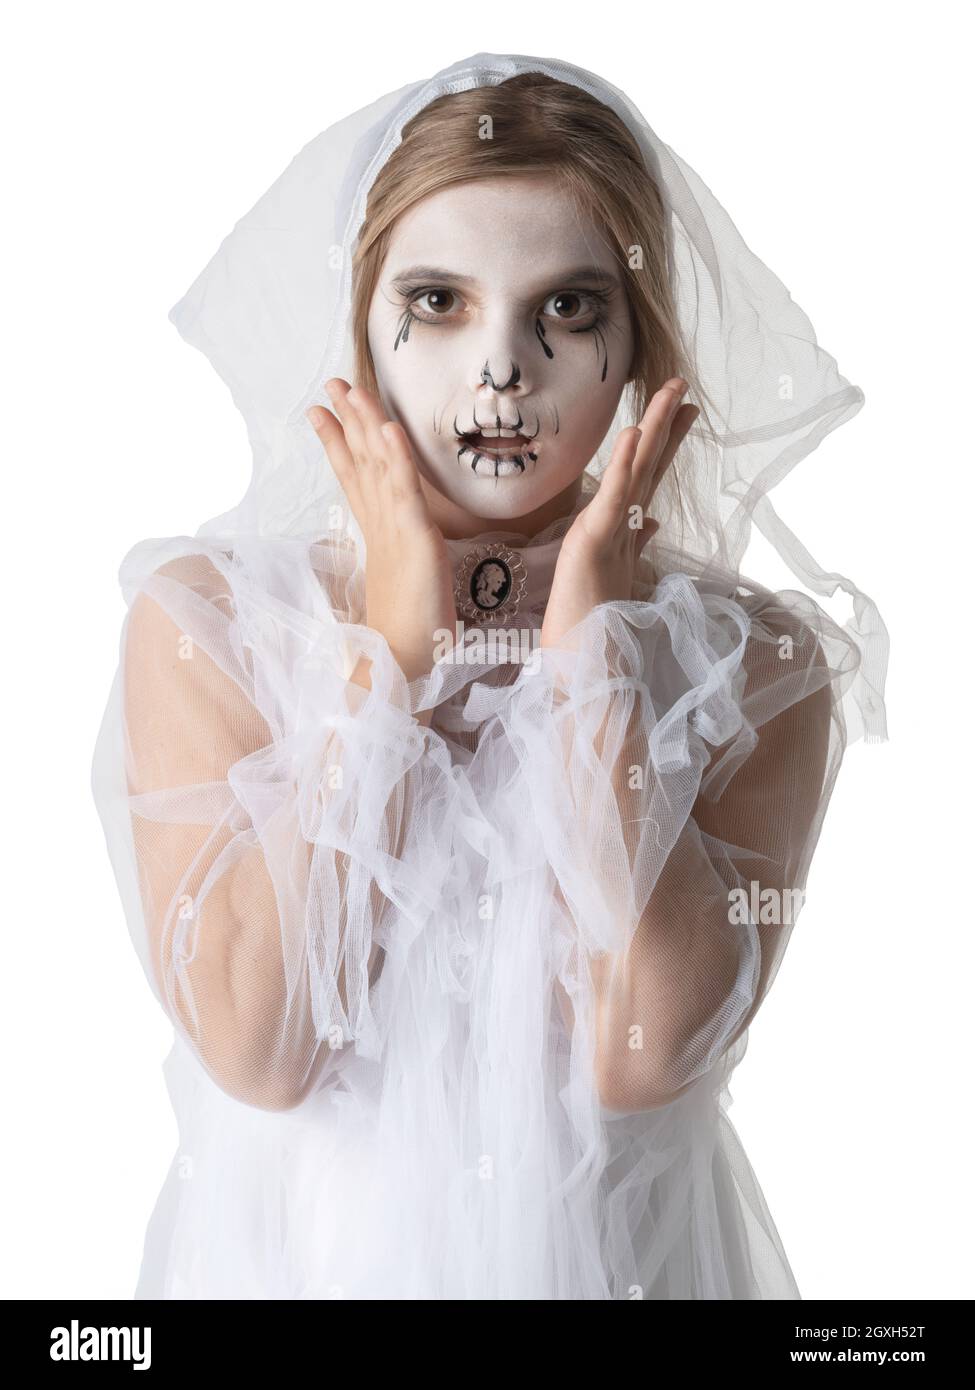 Piccola ragazza spaventata in studio di costume fantasma di Halloween isolato su sfondo bianco Foto Stock